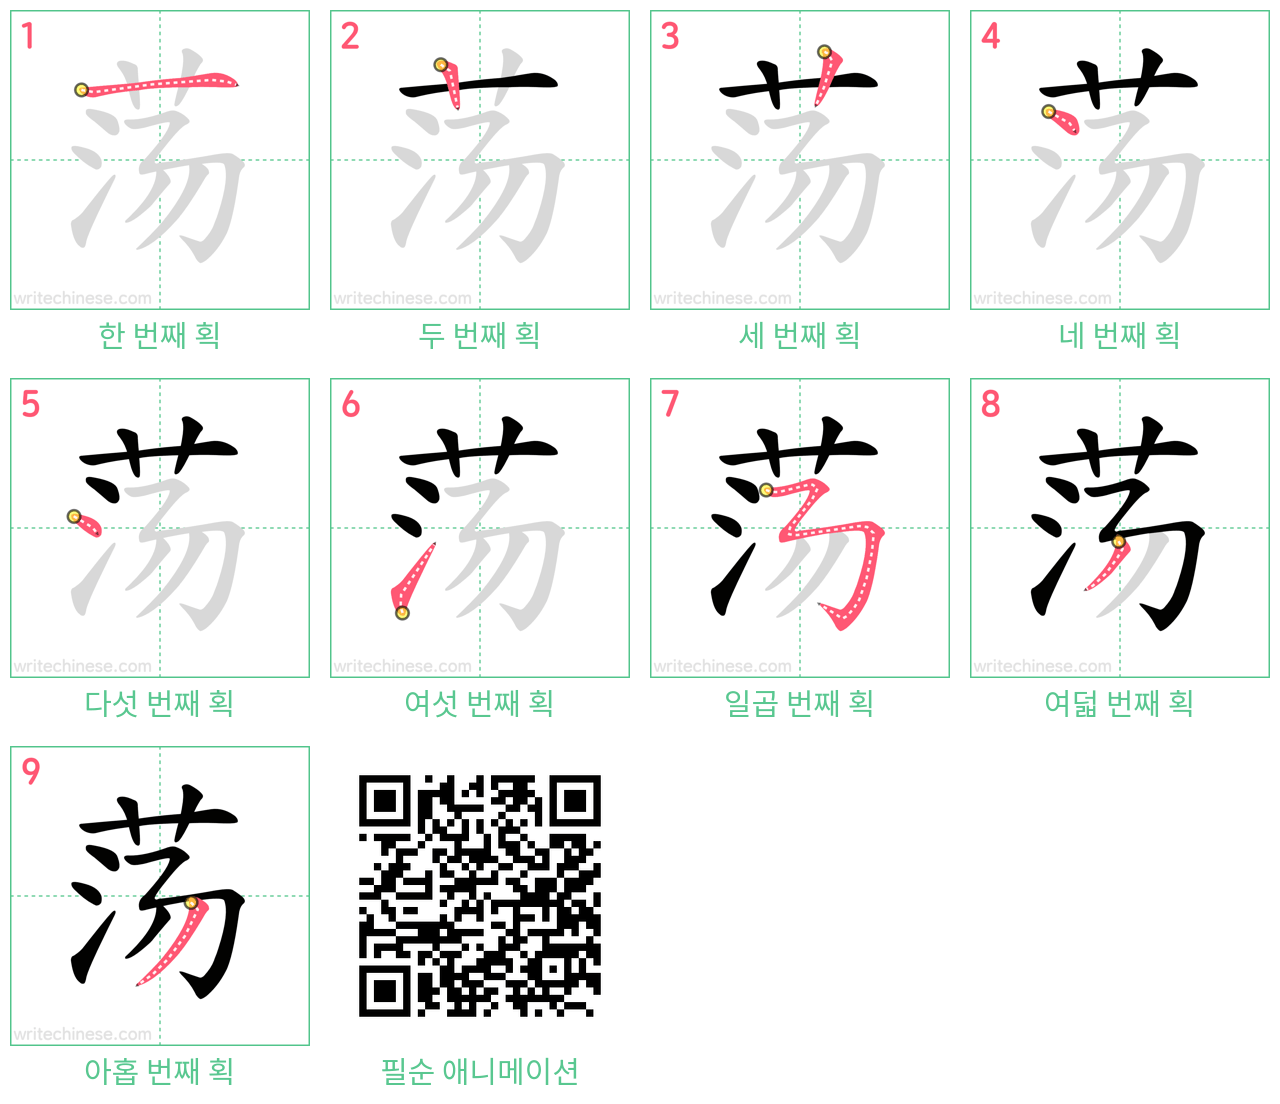 荡 step-by-step stroke order diagrams